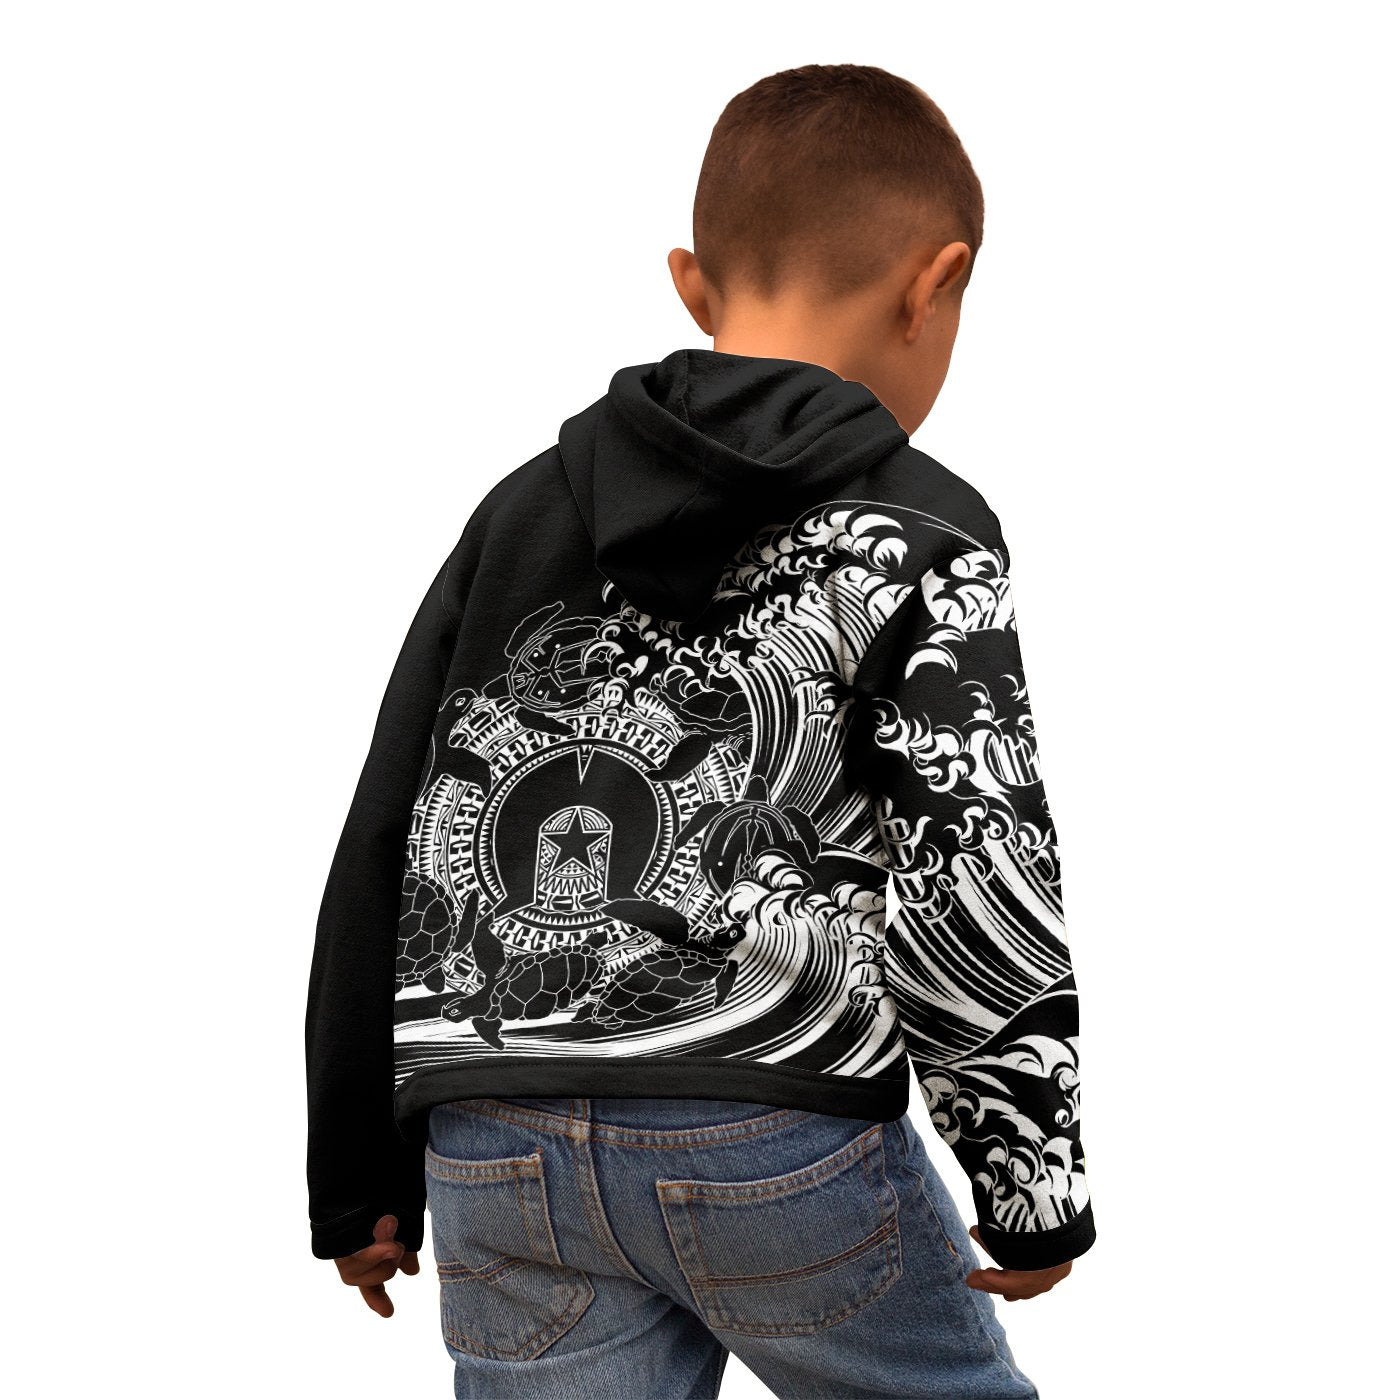 custom-aboriginal-kid-zip-up-hoodie-torres-strait-islands-in-wave-black